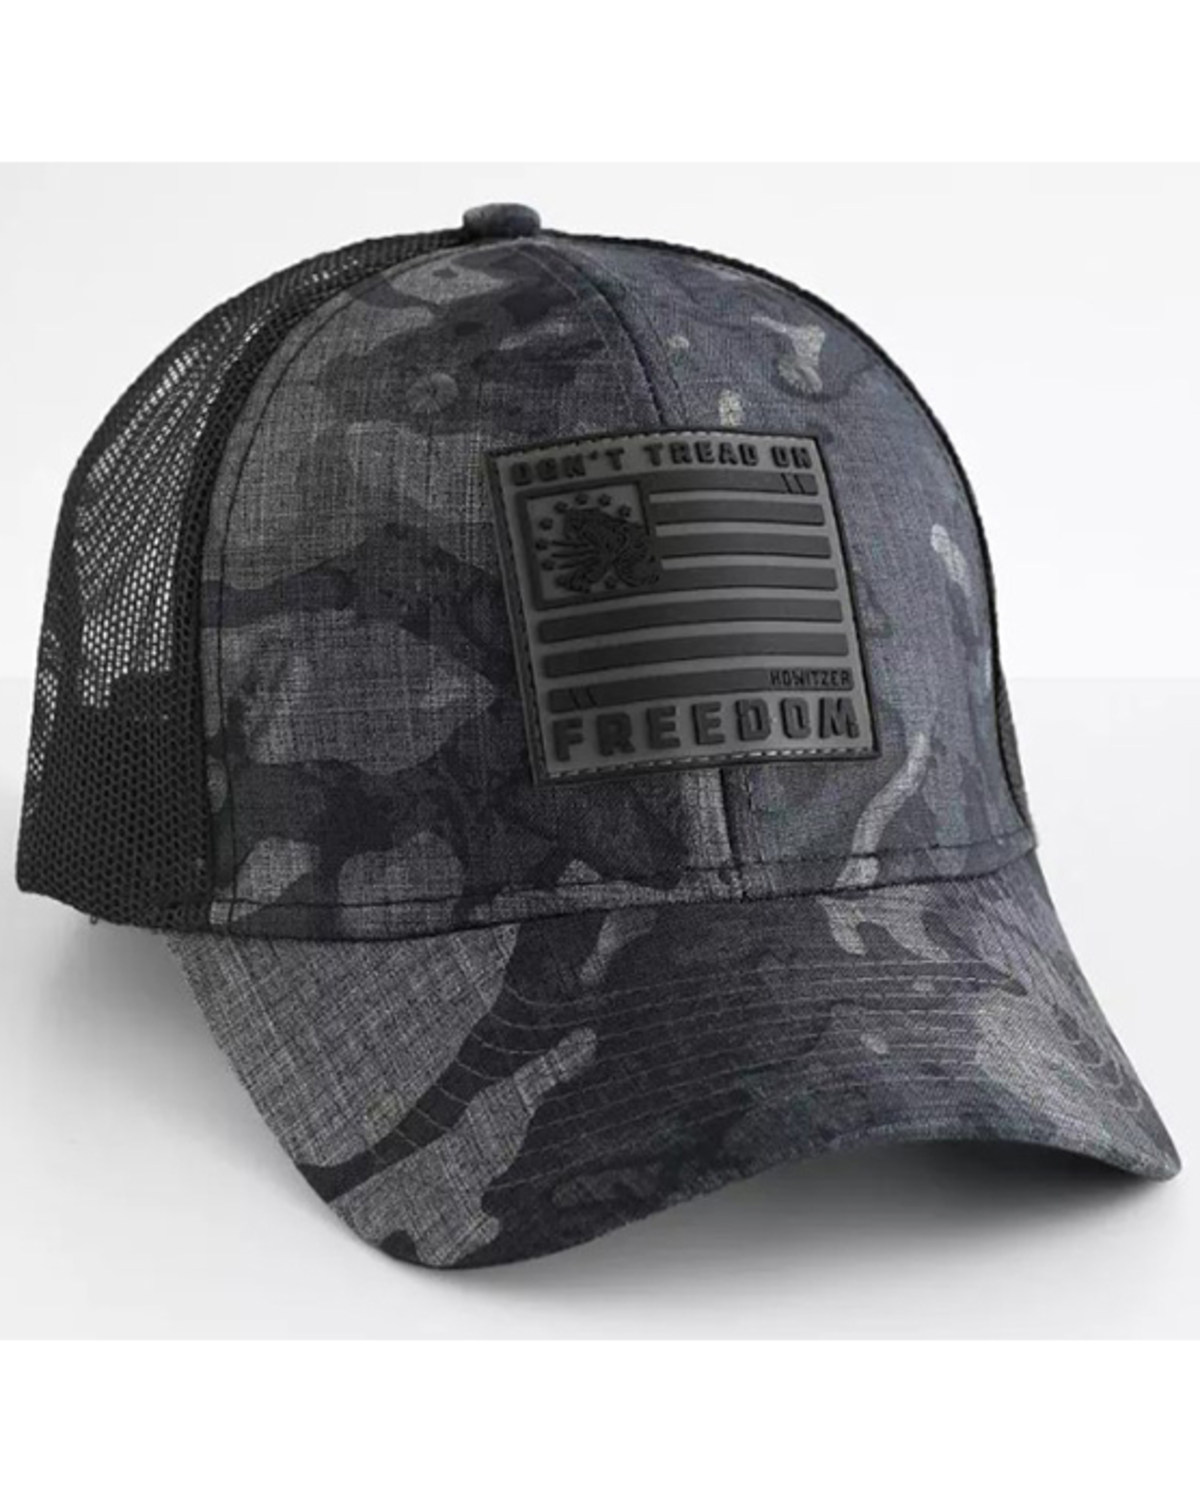 Howitzer Men's Don't Tread Freedom Camo Trucker Hat